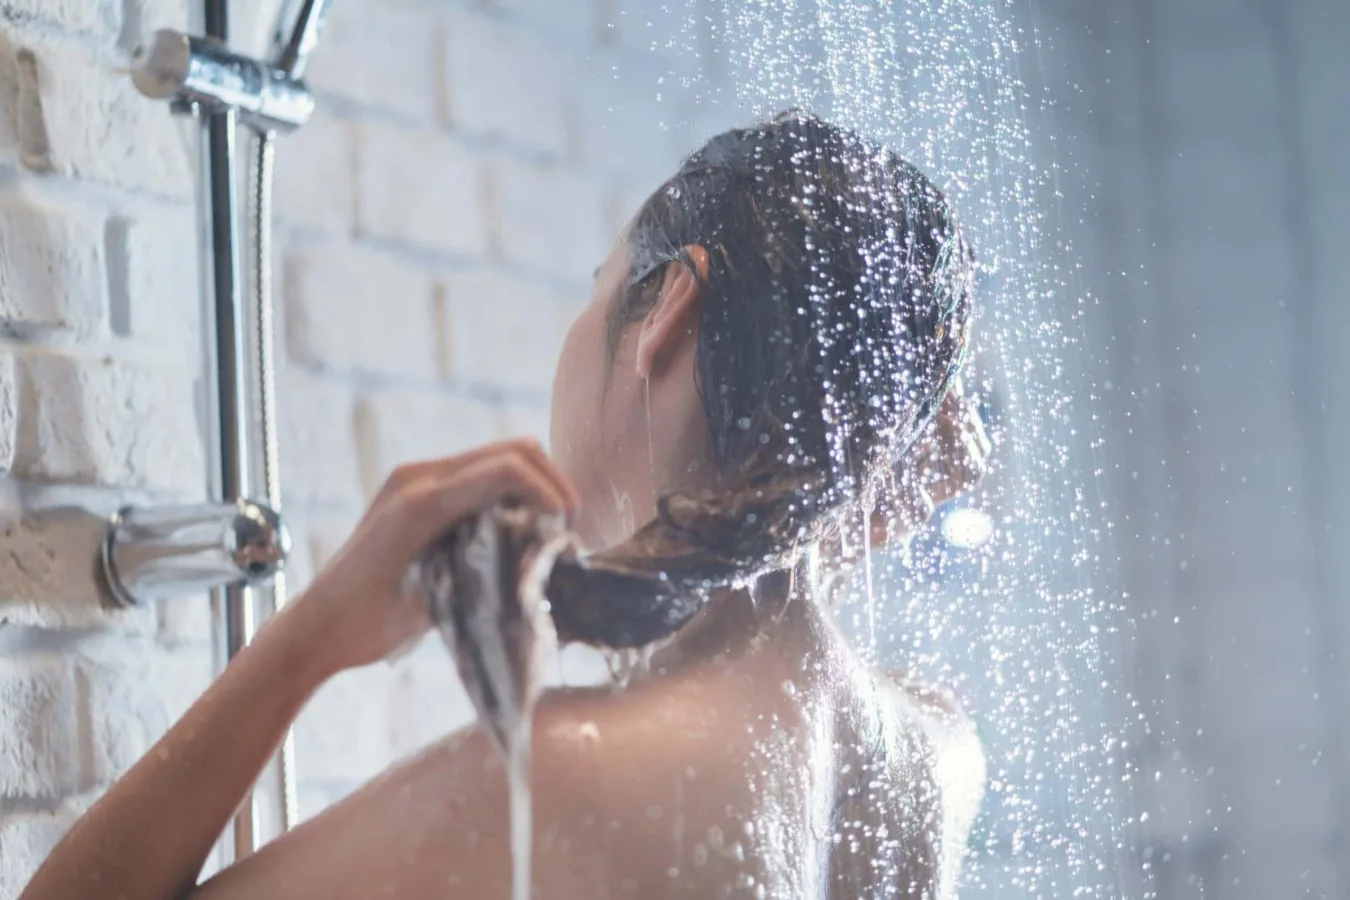 Kobieta myjąca włosy pod prysznicem, z kroplami wody rozpryskującymi się wokół.